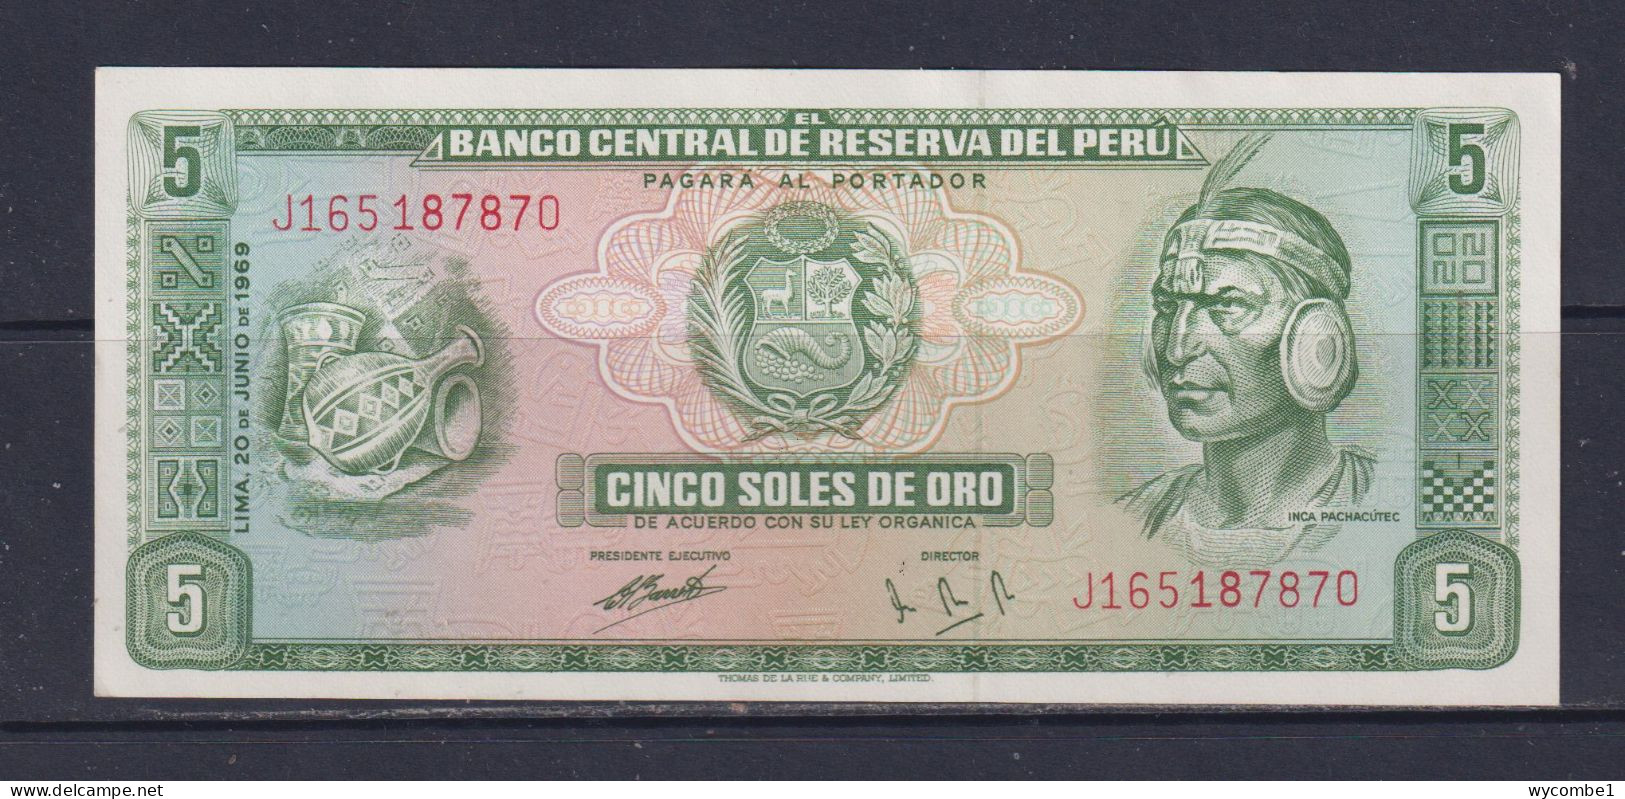 PERU -  1969 10 Sols UNC/aUNC  Banknote - Perú